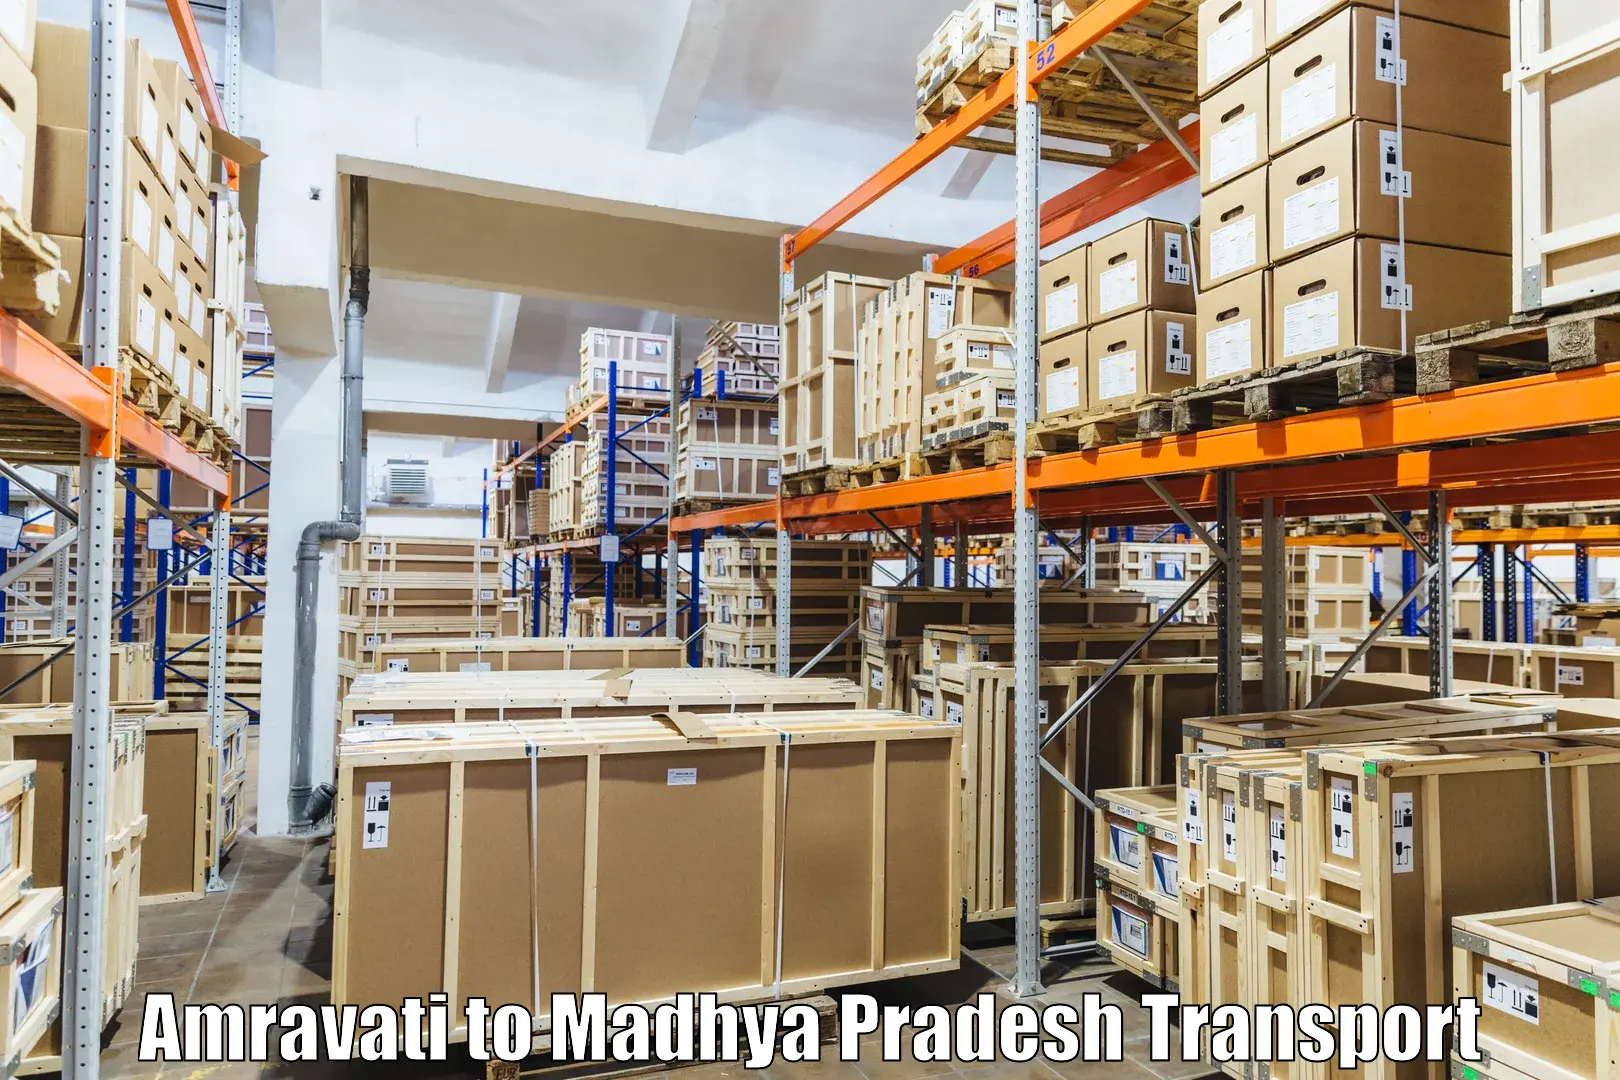 Pick up transport service Amravati to Silwani